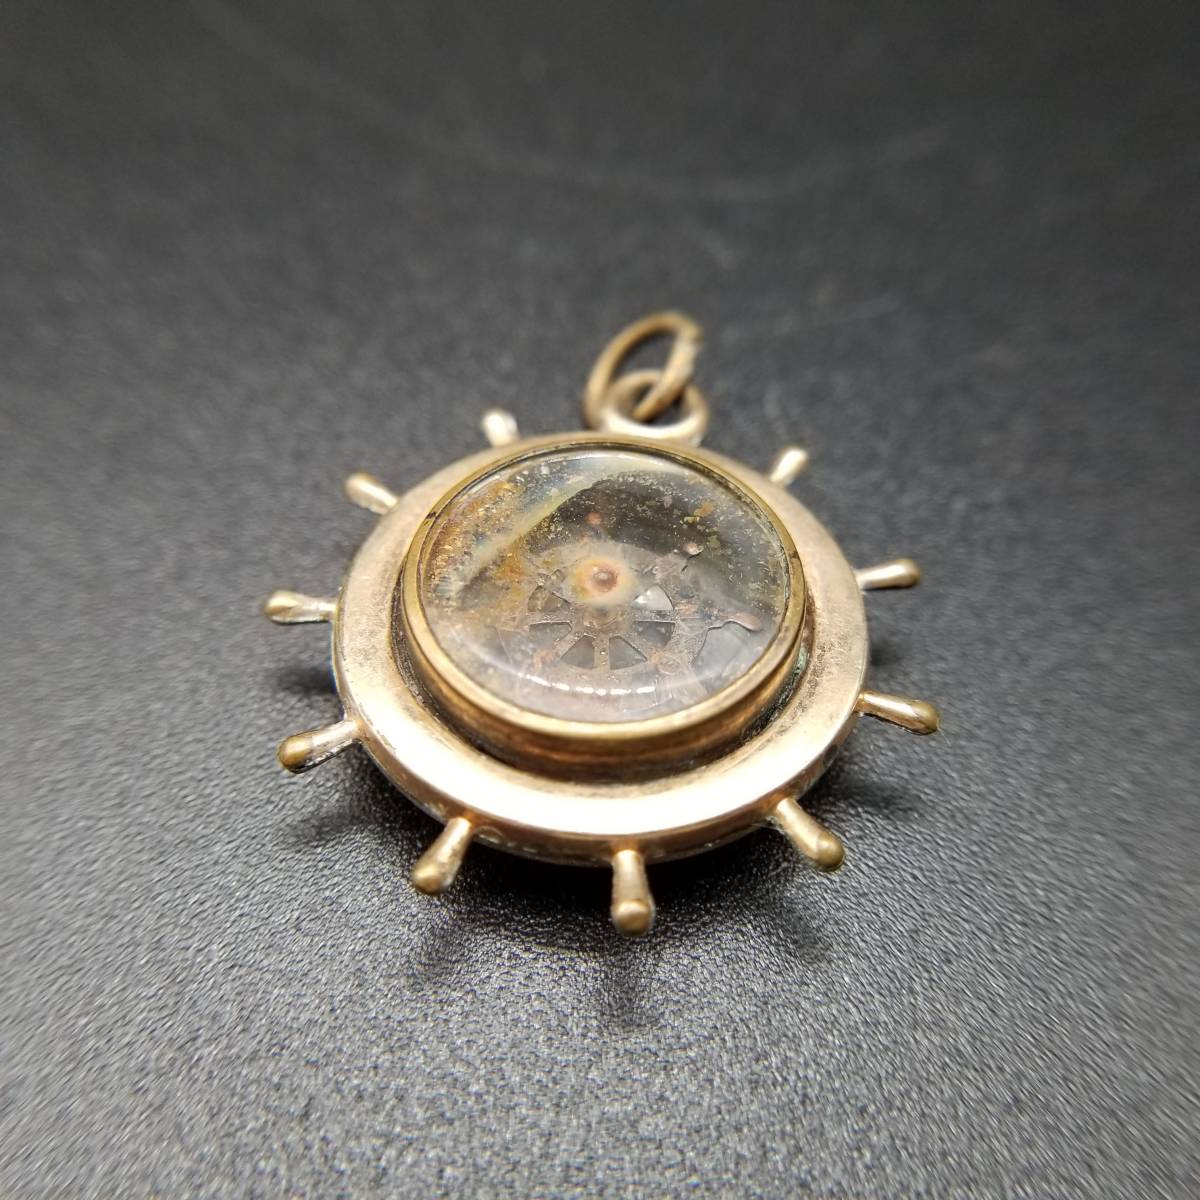  американский античный Victoria rose Gold золотой обивка компас type очарование fob аксессуары карманные часы NA56